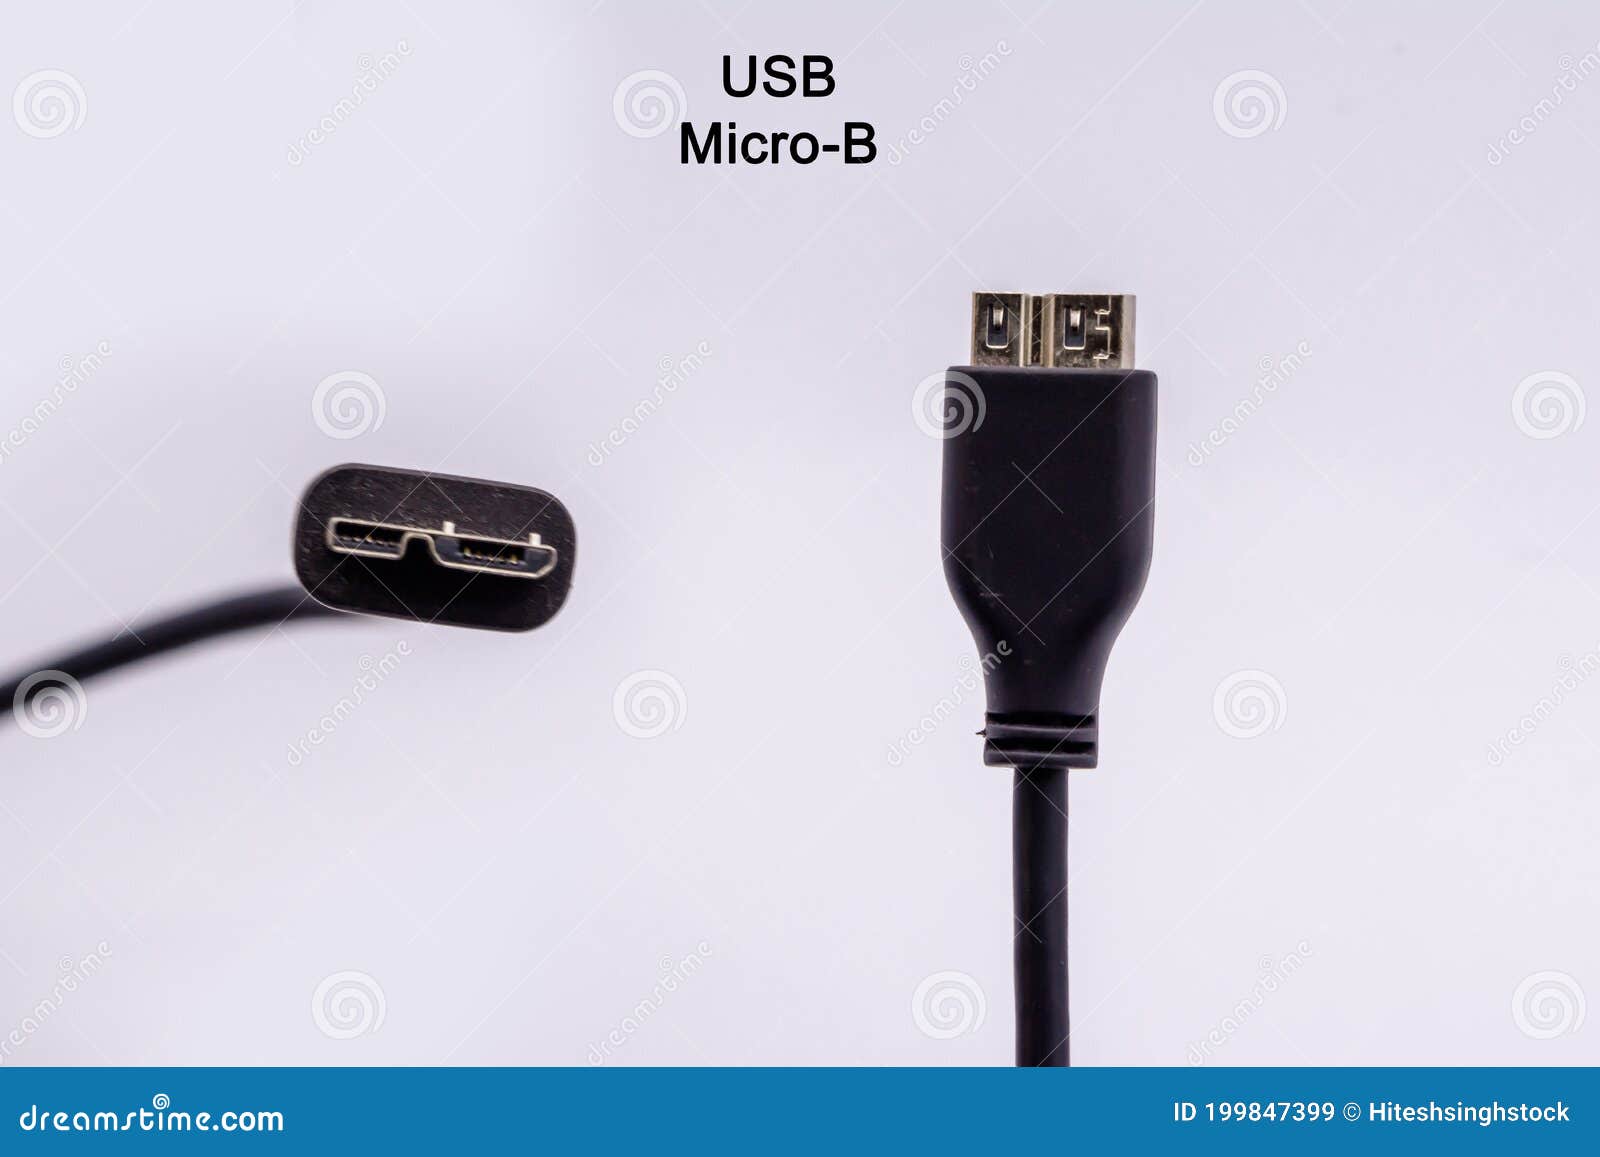 Cable Micro USB Tipo B De Diferentes ángulos Aislado Contra Fondo Blanco Cable Conector De Disco Duro Externo Imagen de archivo - Imagen de tarjeta, datos: